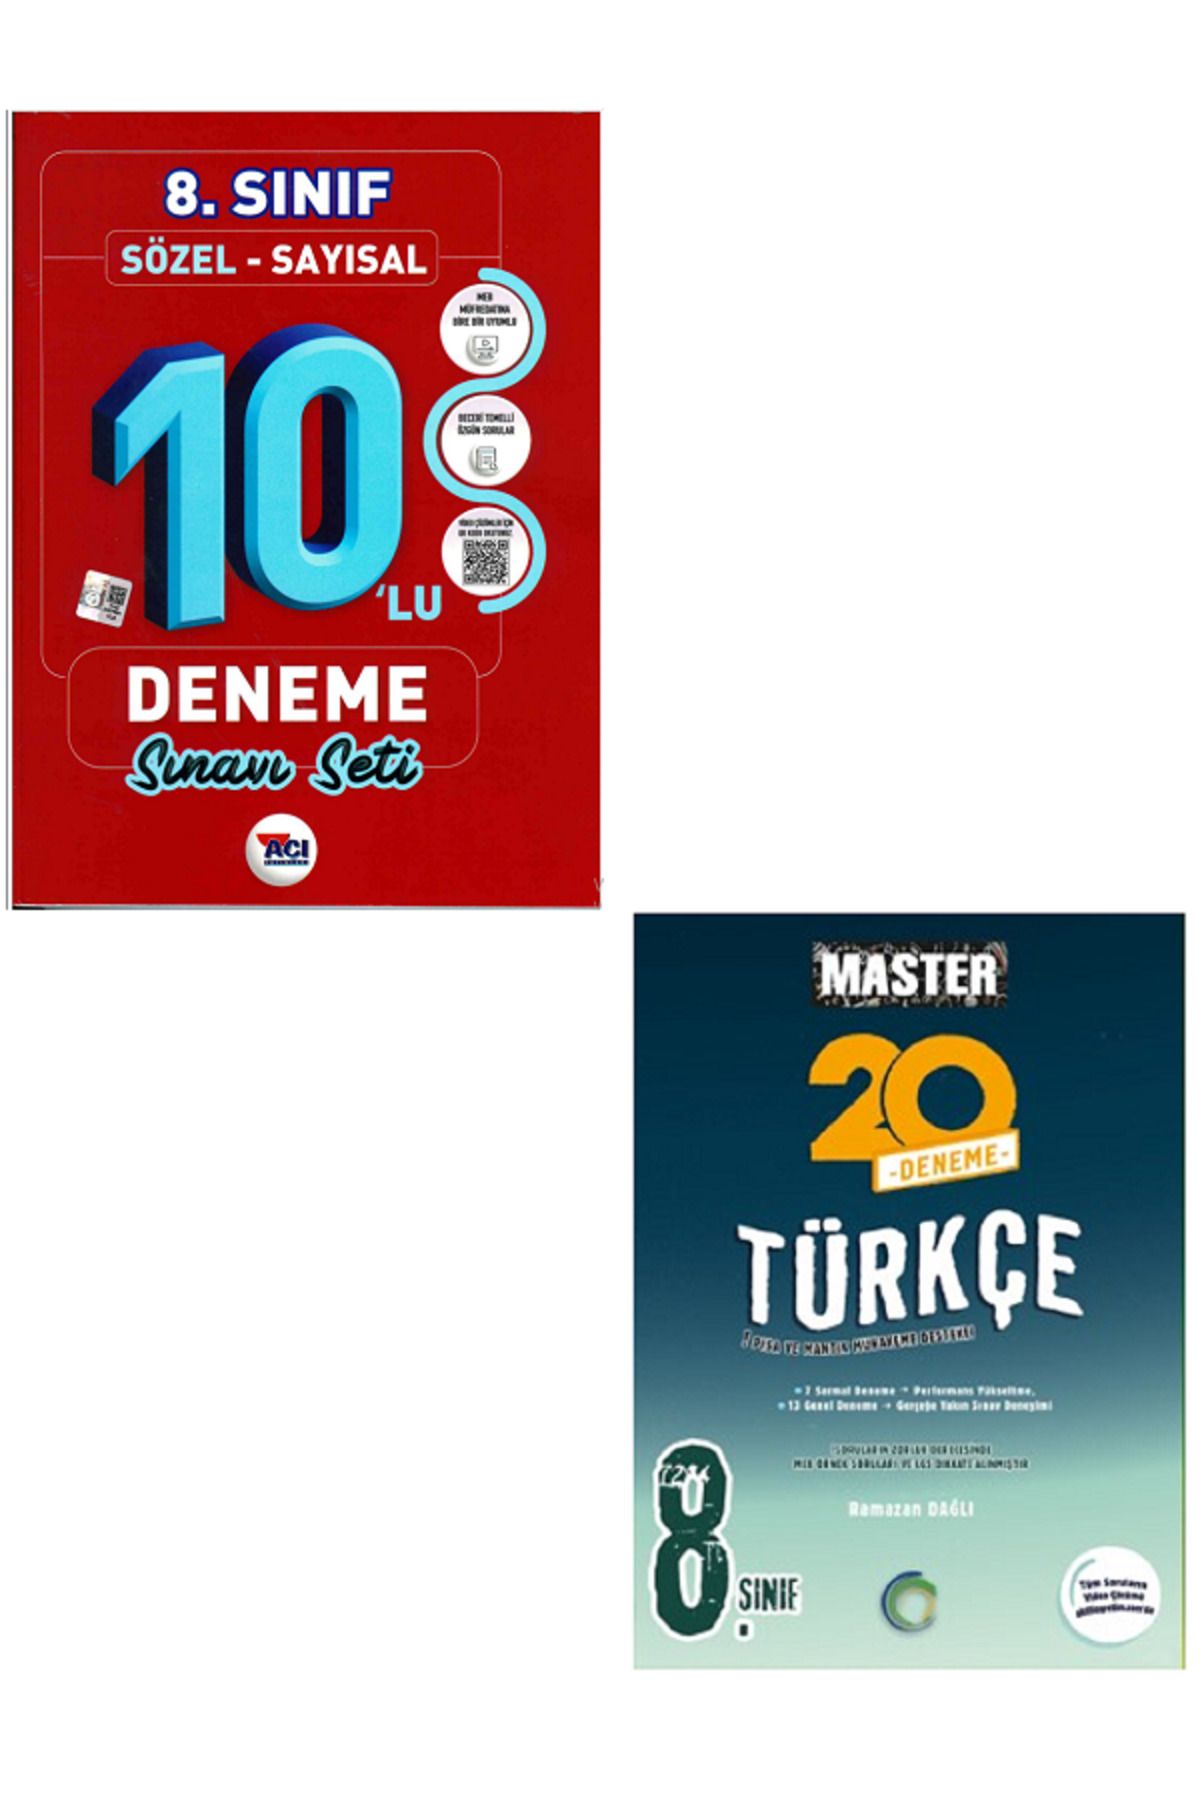 Açı Yayınları 8.Sınıf LGS 10'Lu Deneme Sınav Seti Sözel-Sayısal - 8.Sınıf Okyanus Master Türkçe 20'Li Deneme